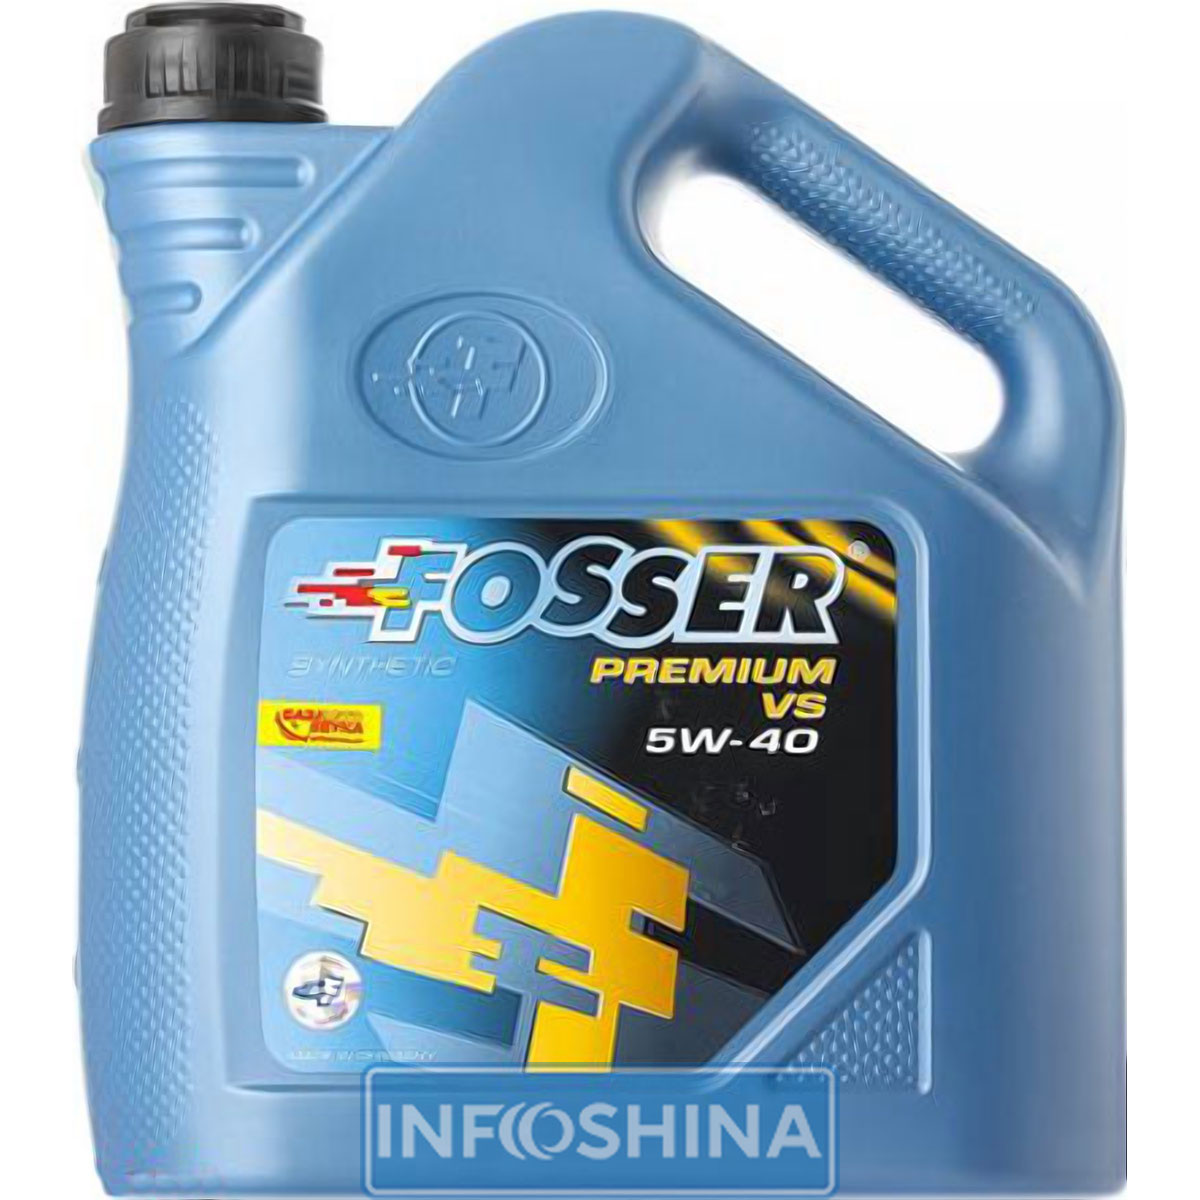 Fosser Premium VS 5W-40